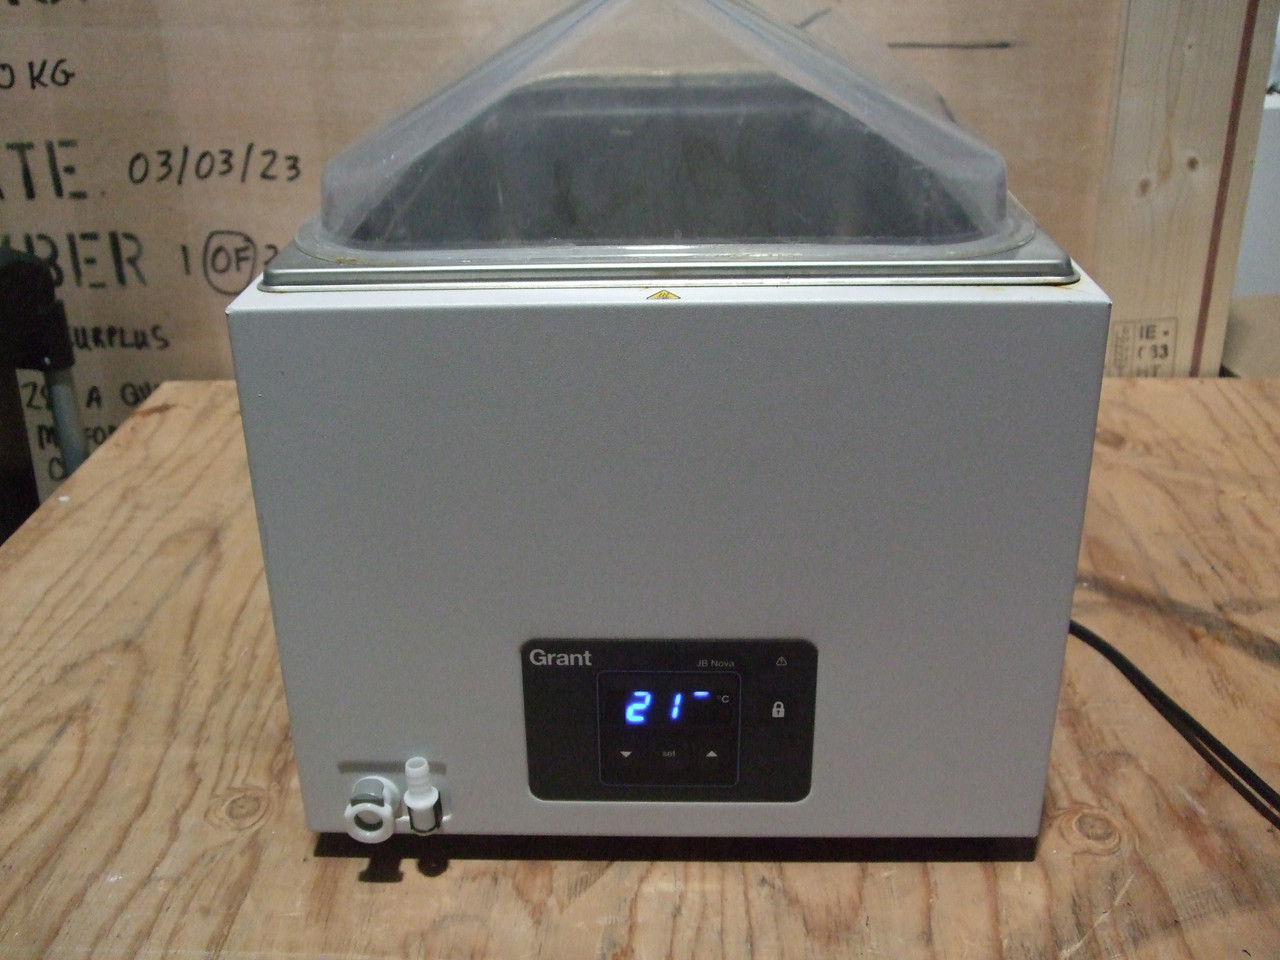 GRANT Instruments LTD Digital Laboratory Water Bath Model JBN26 US